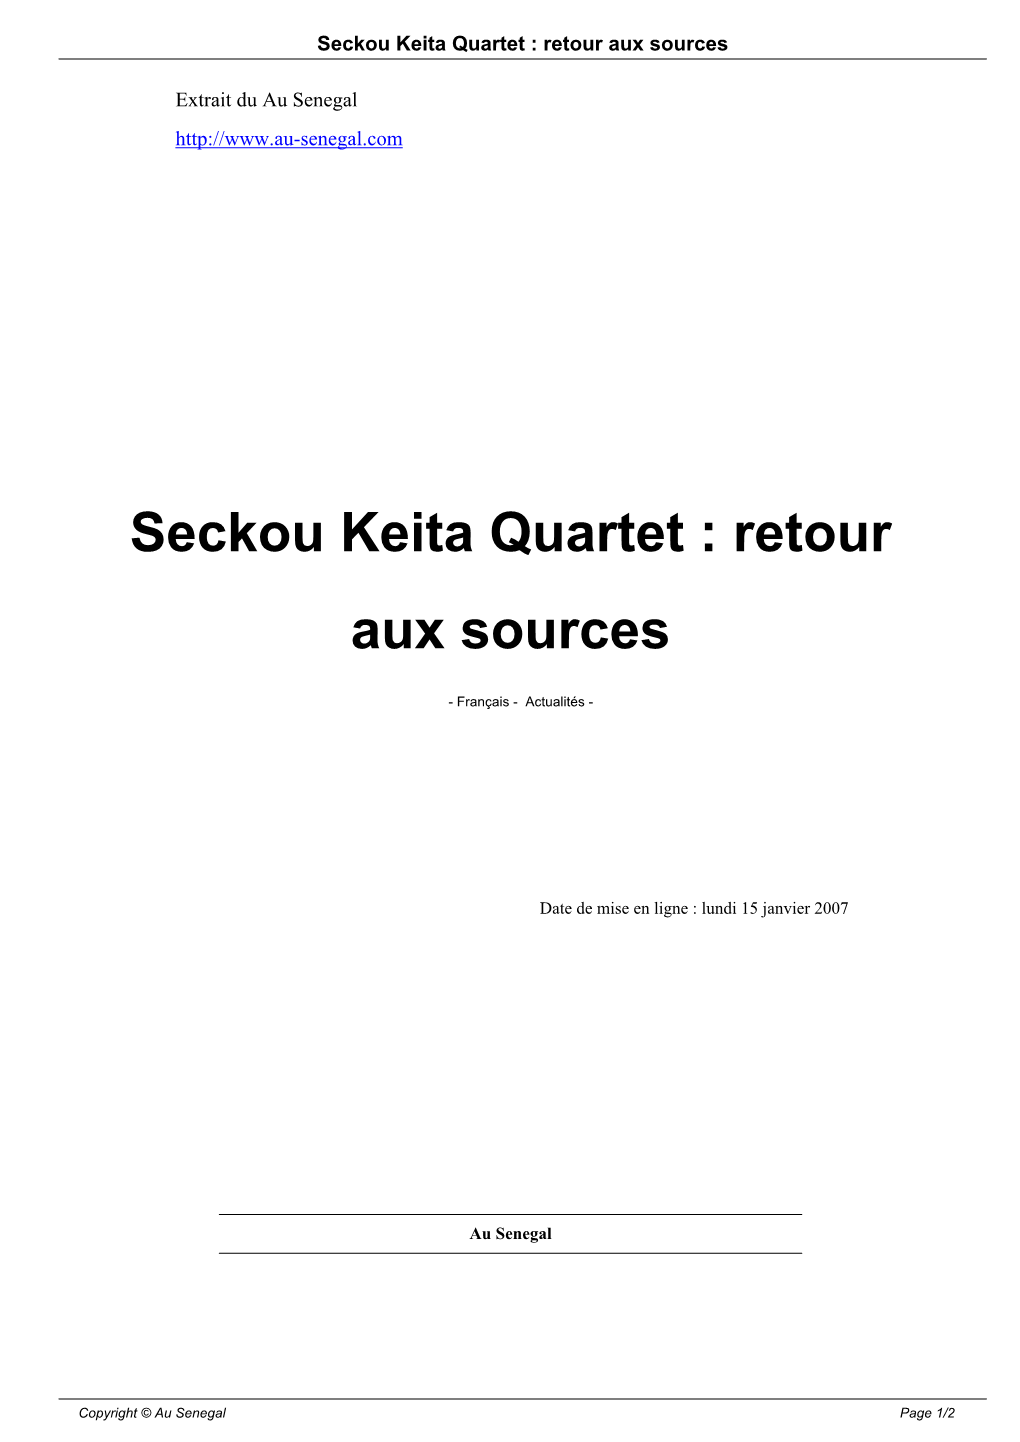 Seckou Keita Quartet : Retour Aux Sources